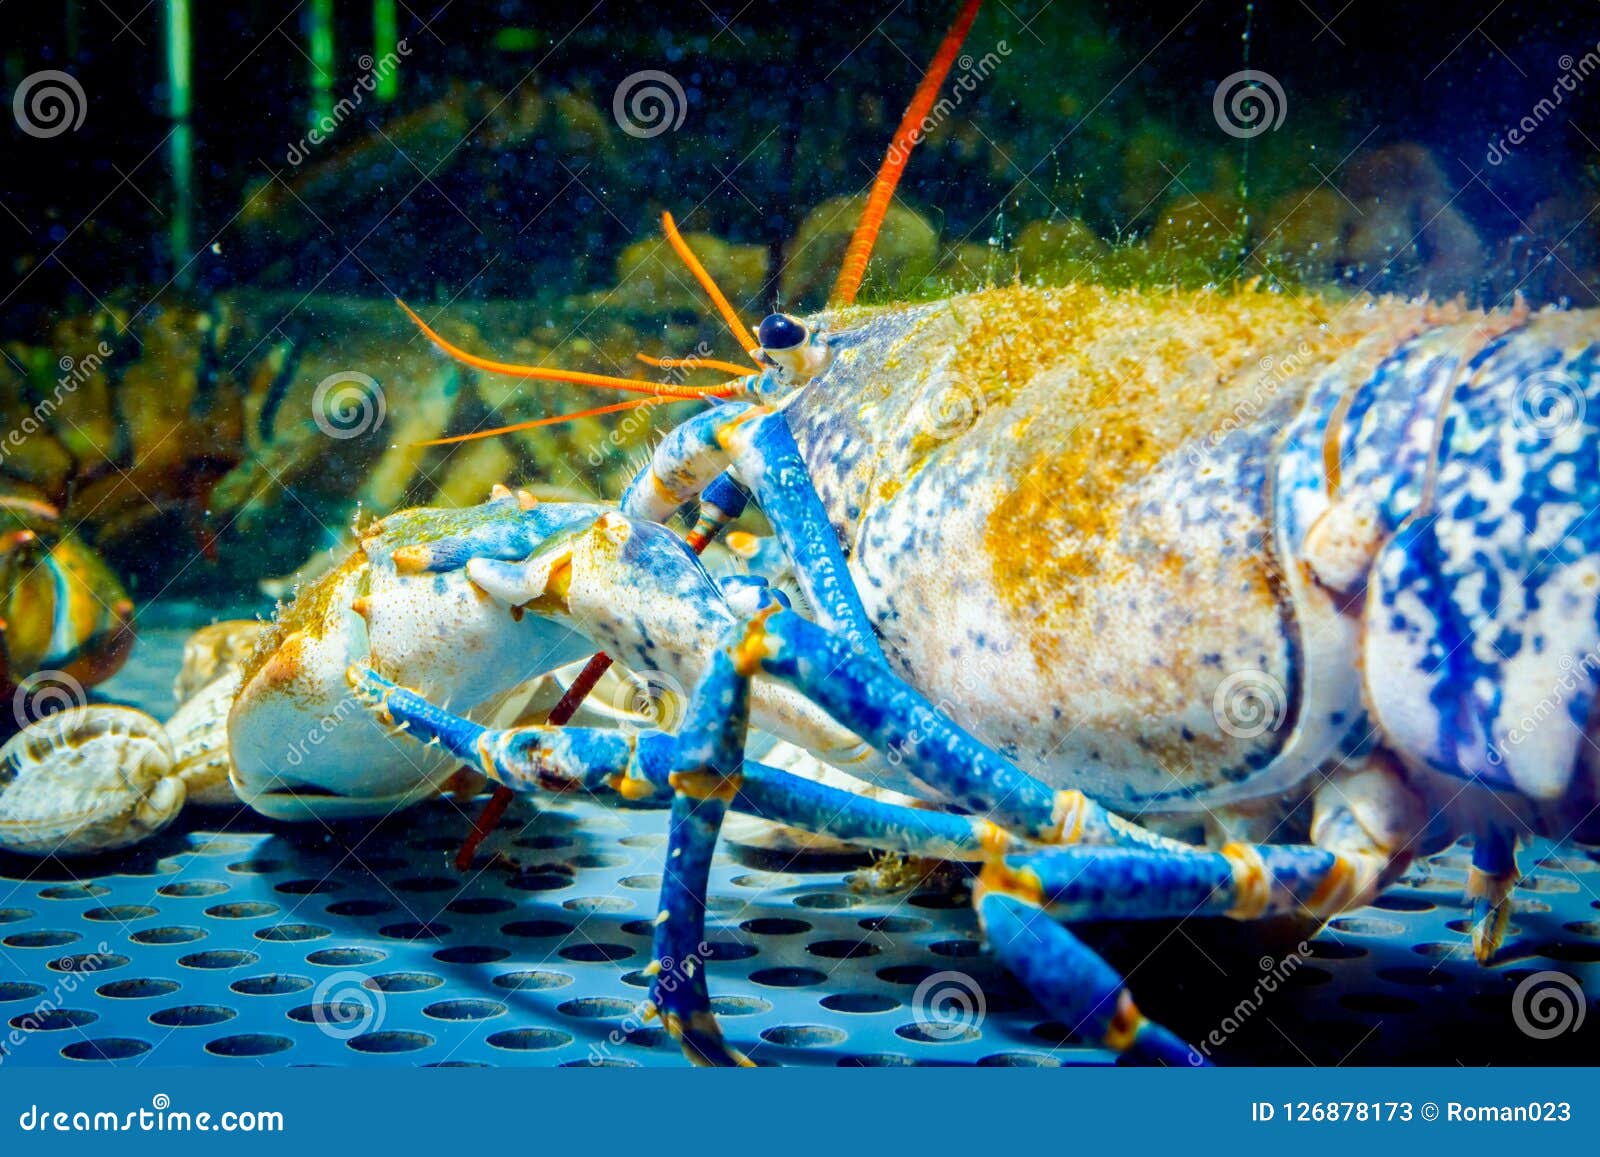 aquarium crayfish for sale near me